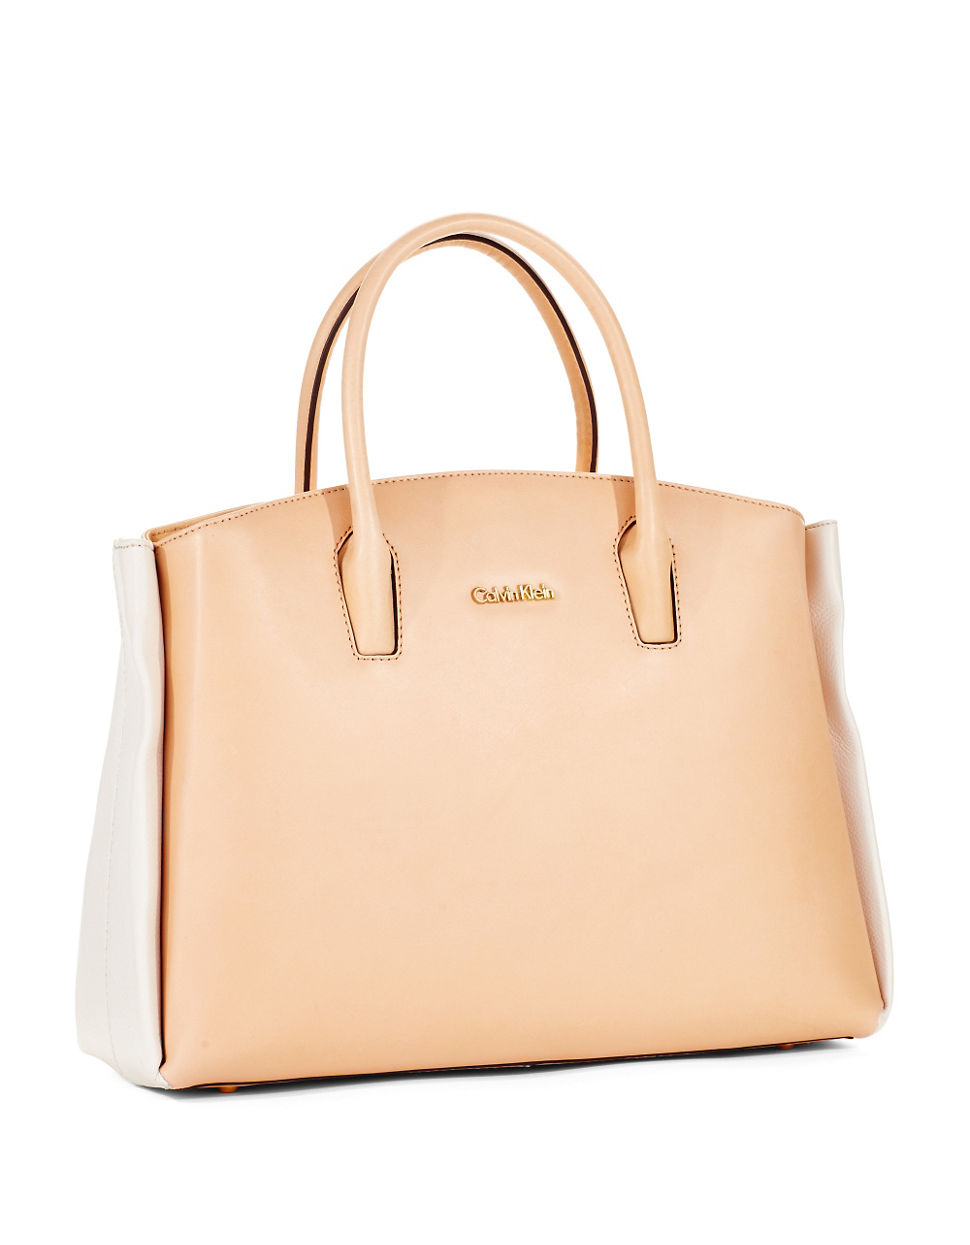 Calvin Klein Vachetta Leather Handbag in Beige | Lyst